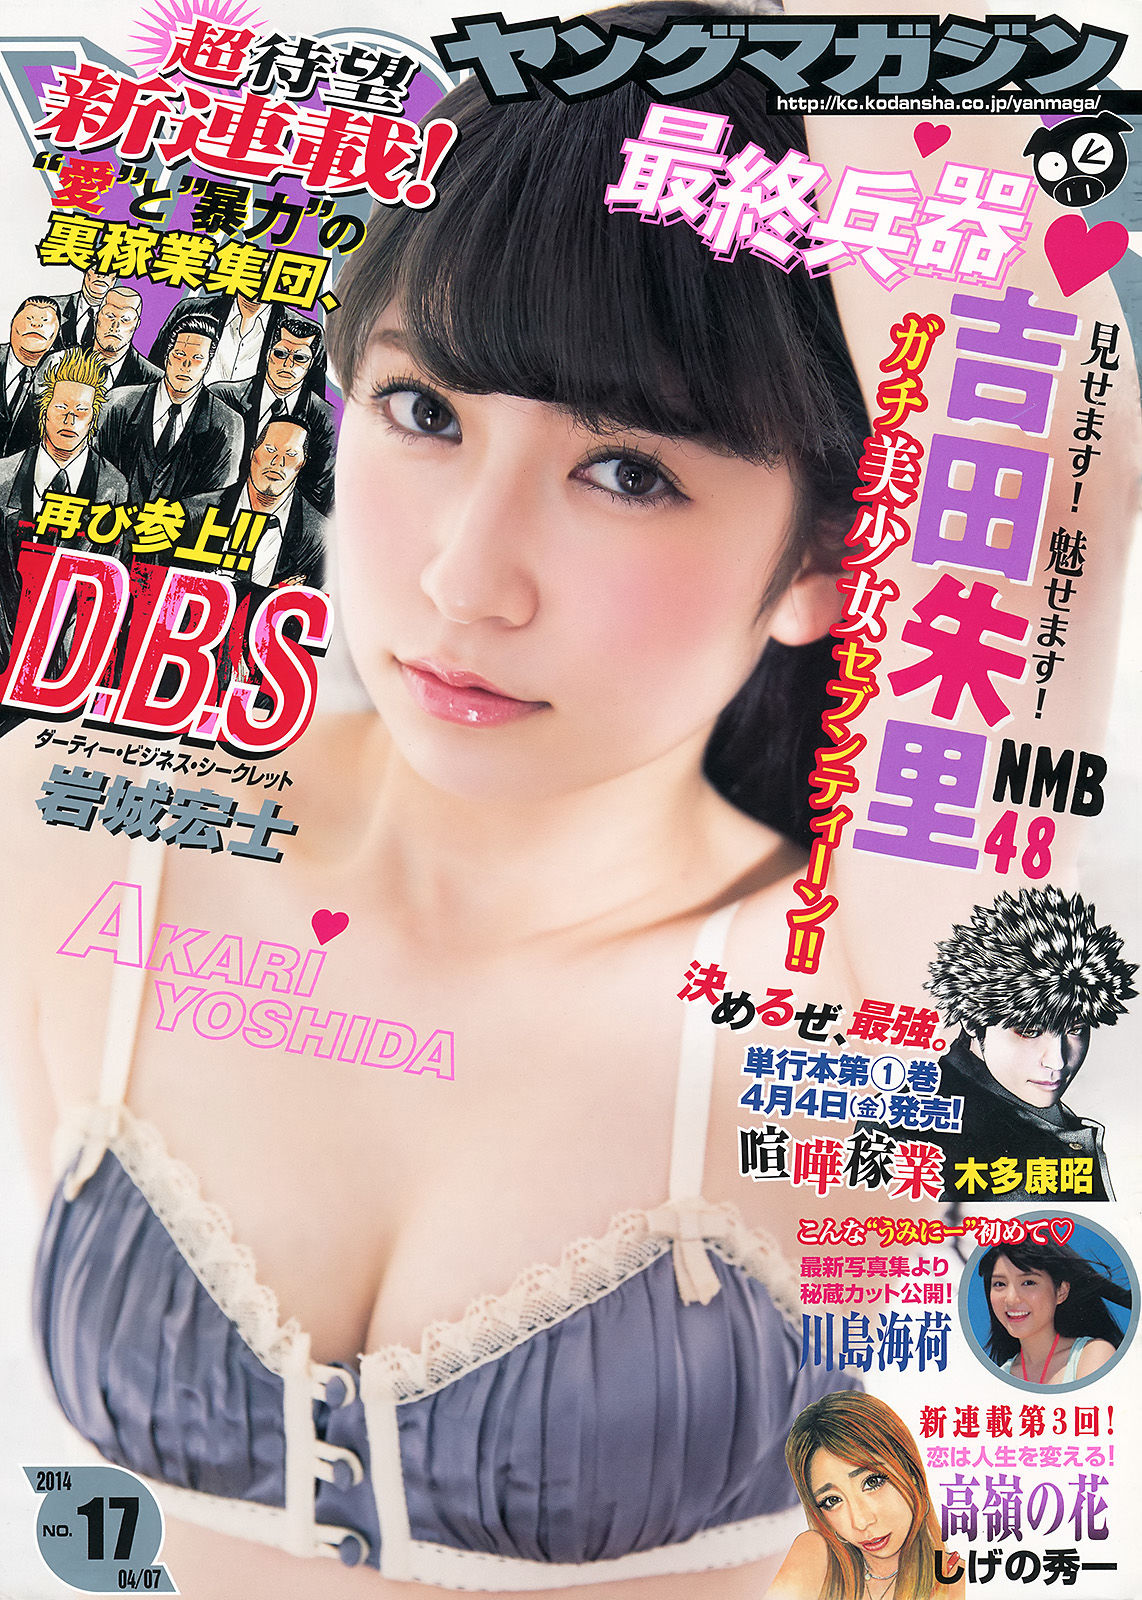 [Young Magazine]日本萌妹子:吉田朱里高品质壁纸图片珍藏版(11P)